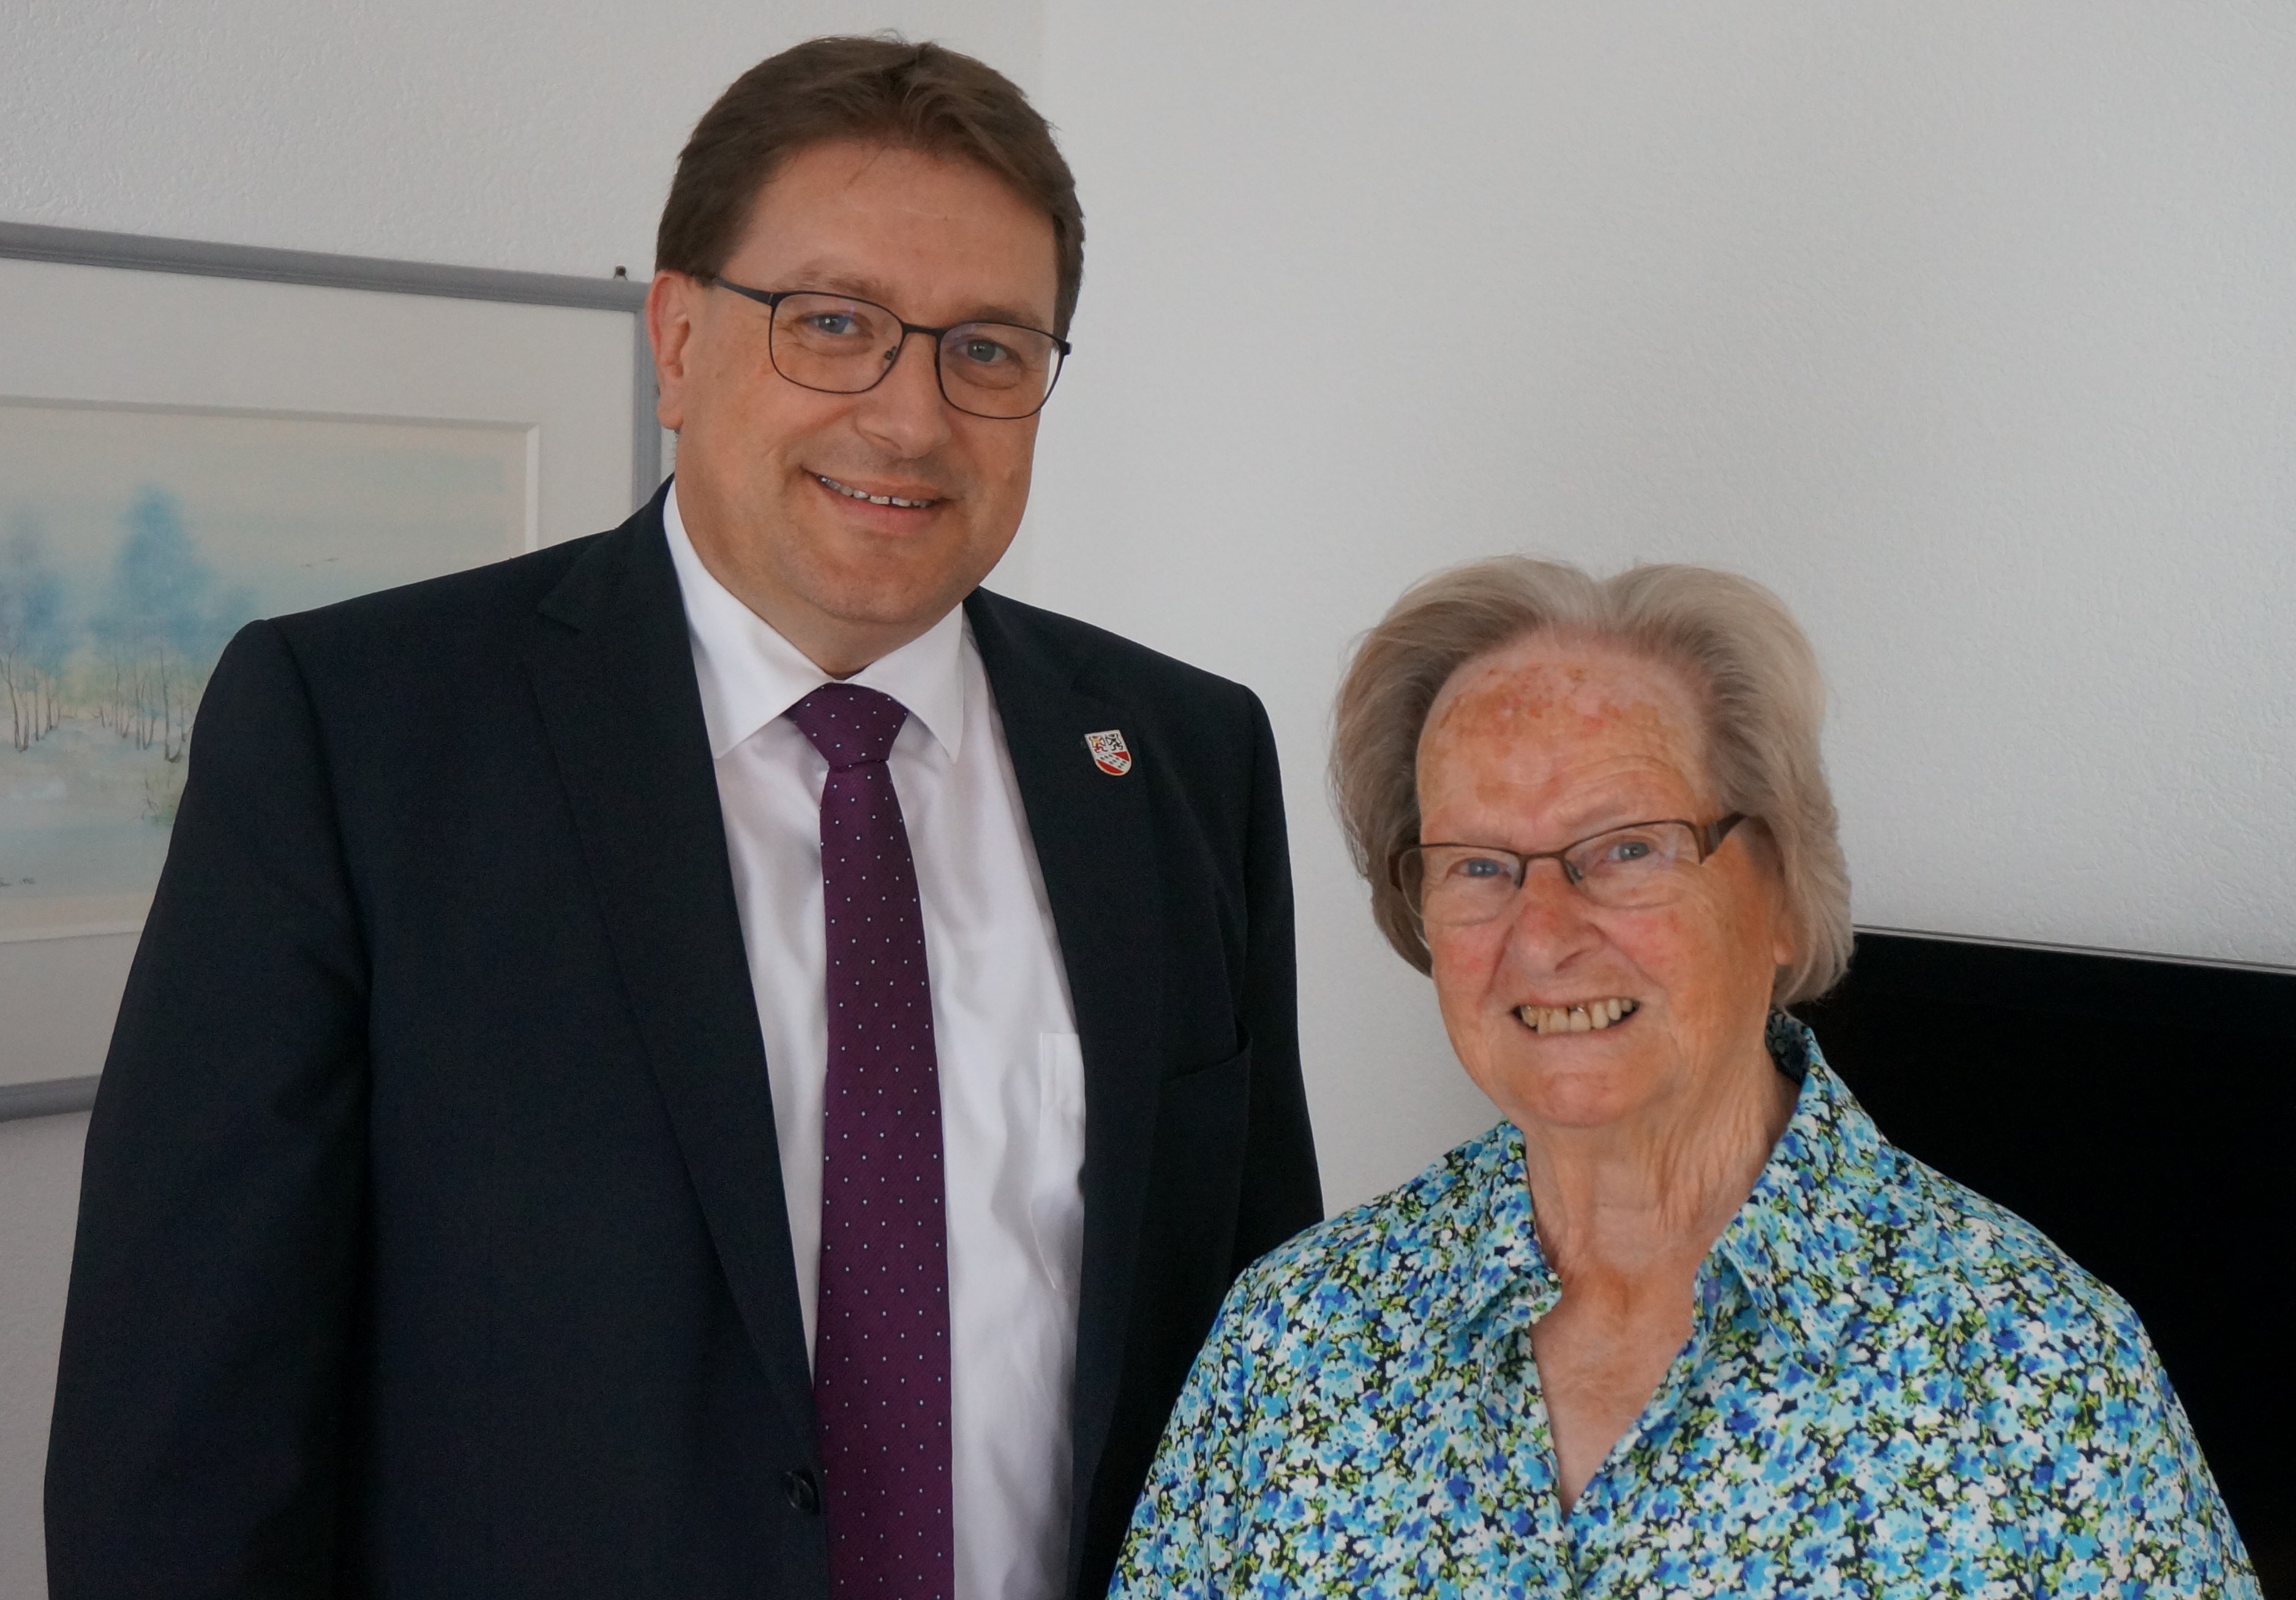 Am 16. Juli 2020 durfte der Gemeinderat persönlich die Glückwünsche an Frau Schneider zum 90. Geburtstag überreichen. Herzlichen Glückwunsch!